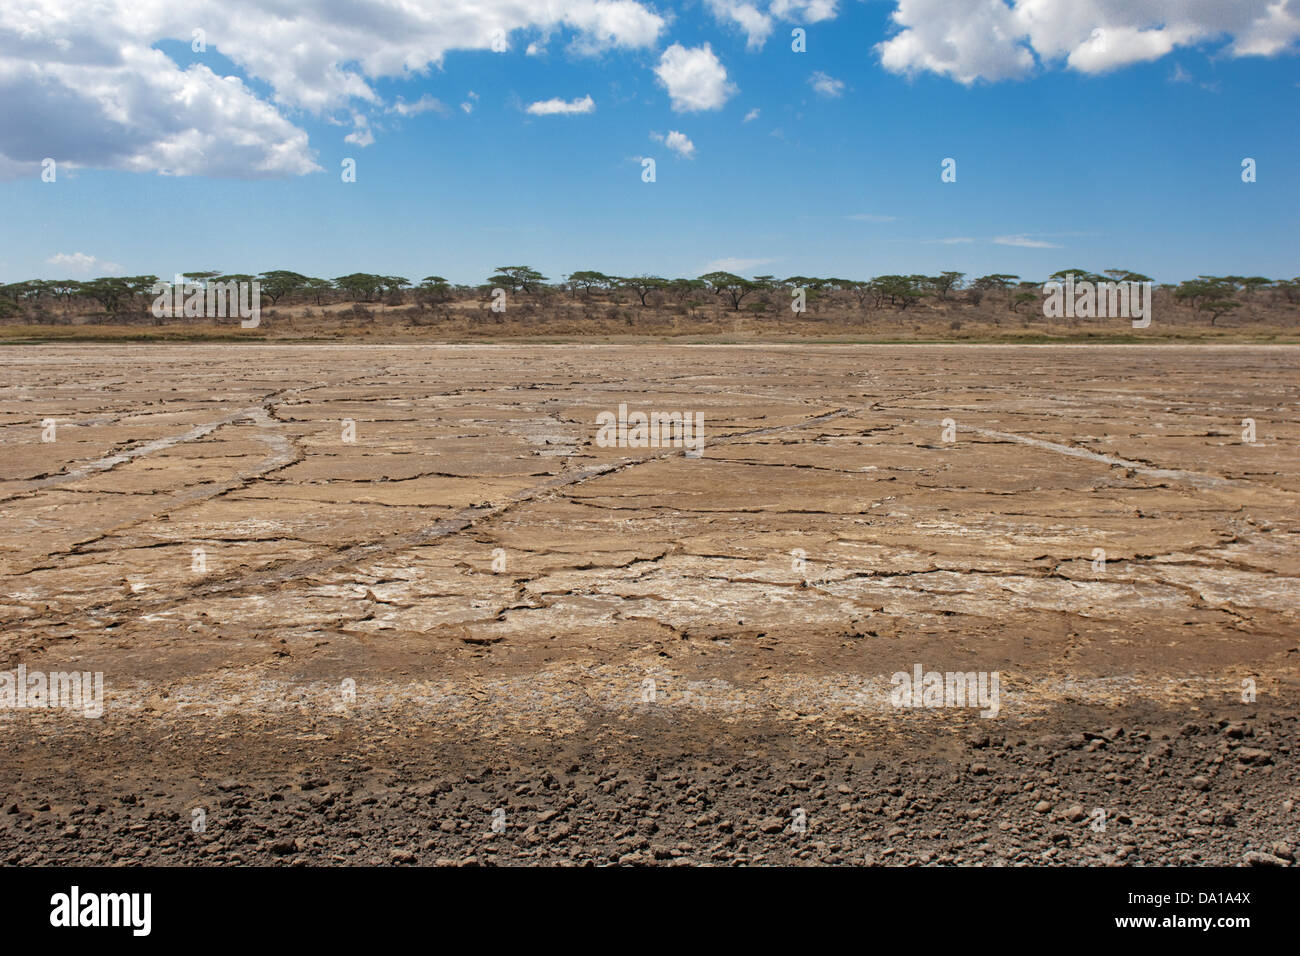 Dried salt lake landscape, Ndutu lake, Ngorongoro crater conservation area, Tanzania, Africa. Stock Photo